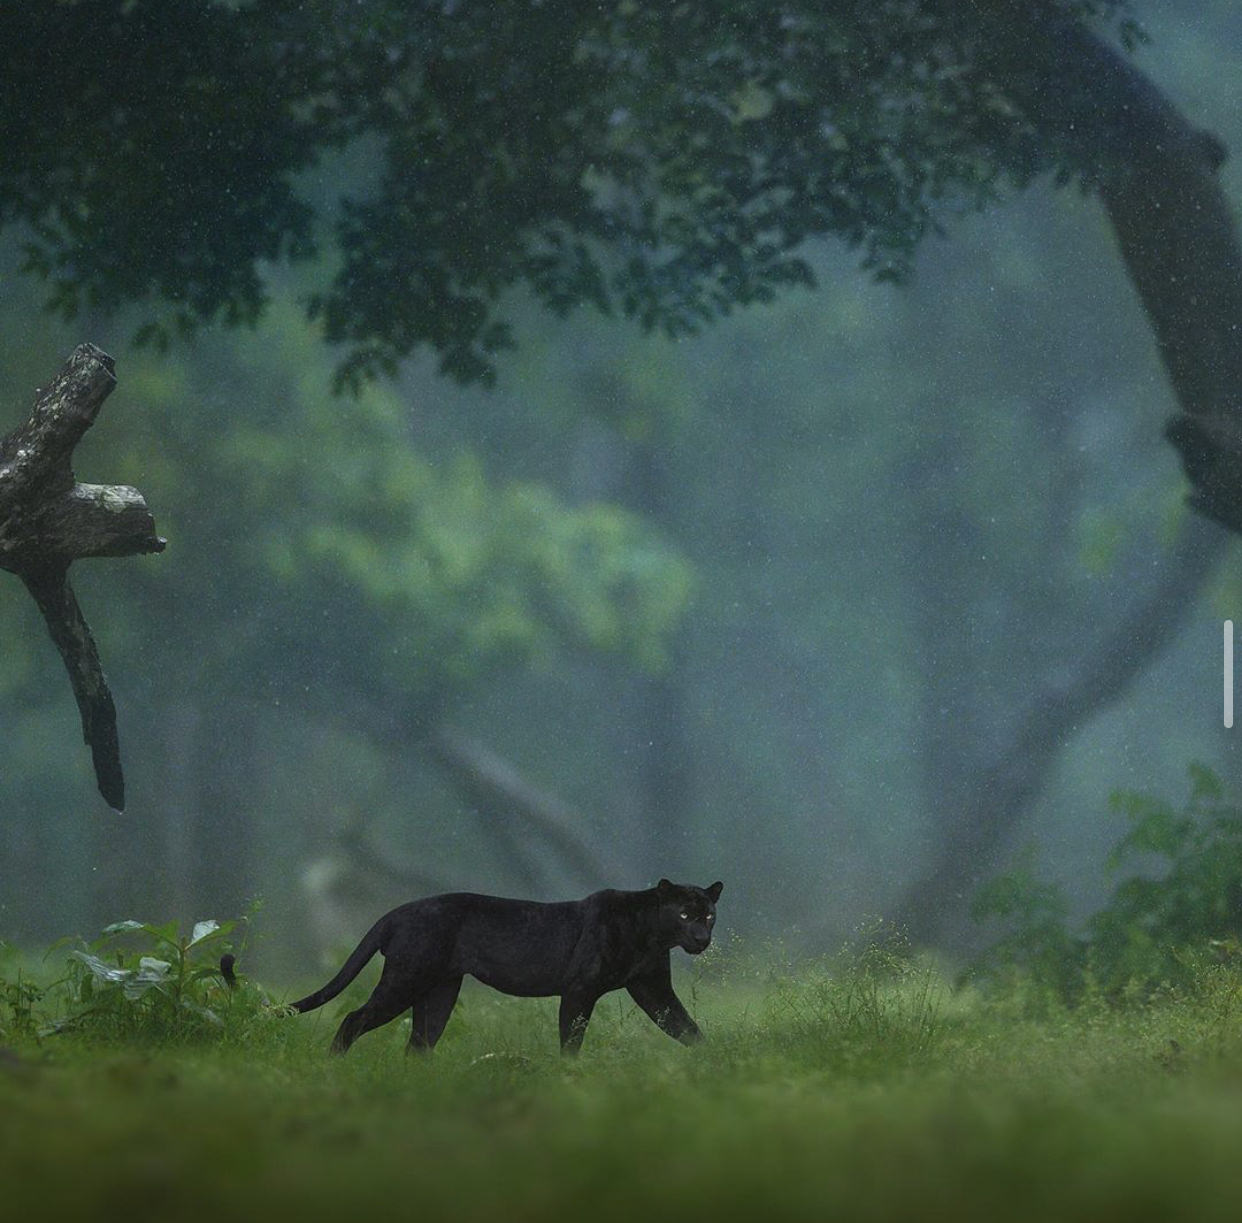 پلنگ سیاه در میلن جنگل هند/ شاز جاگ